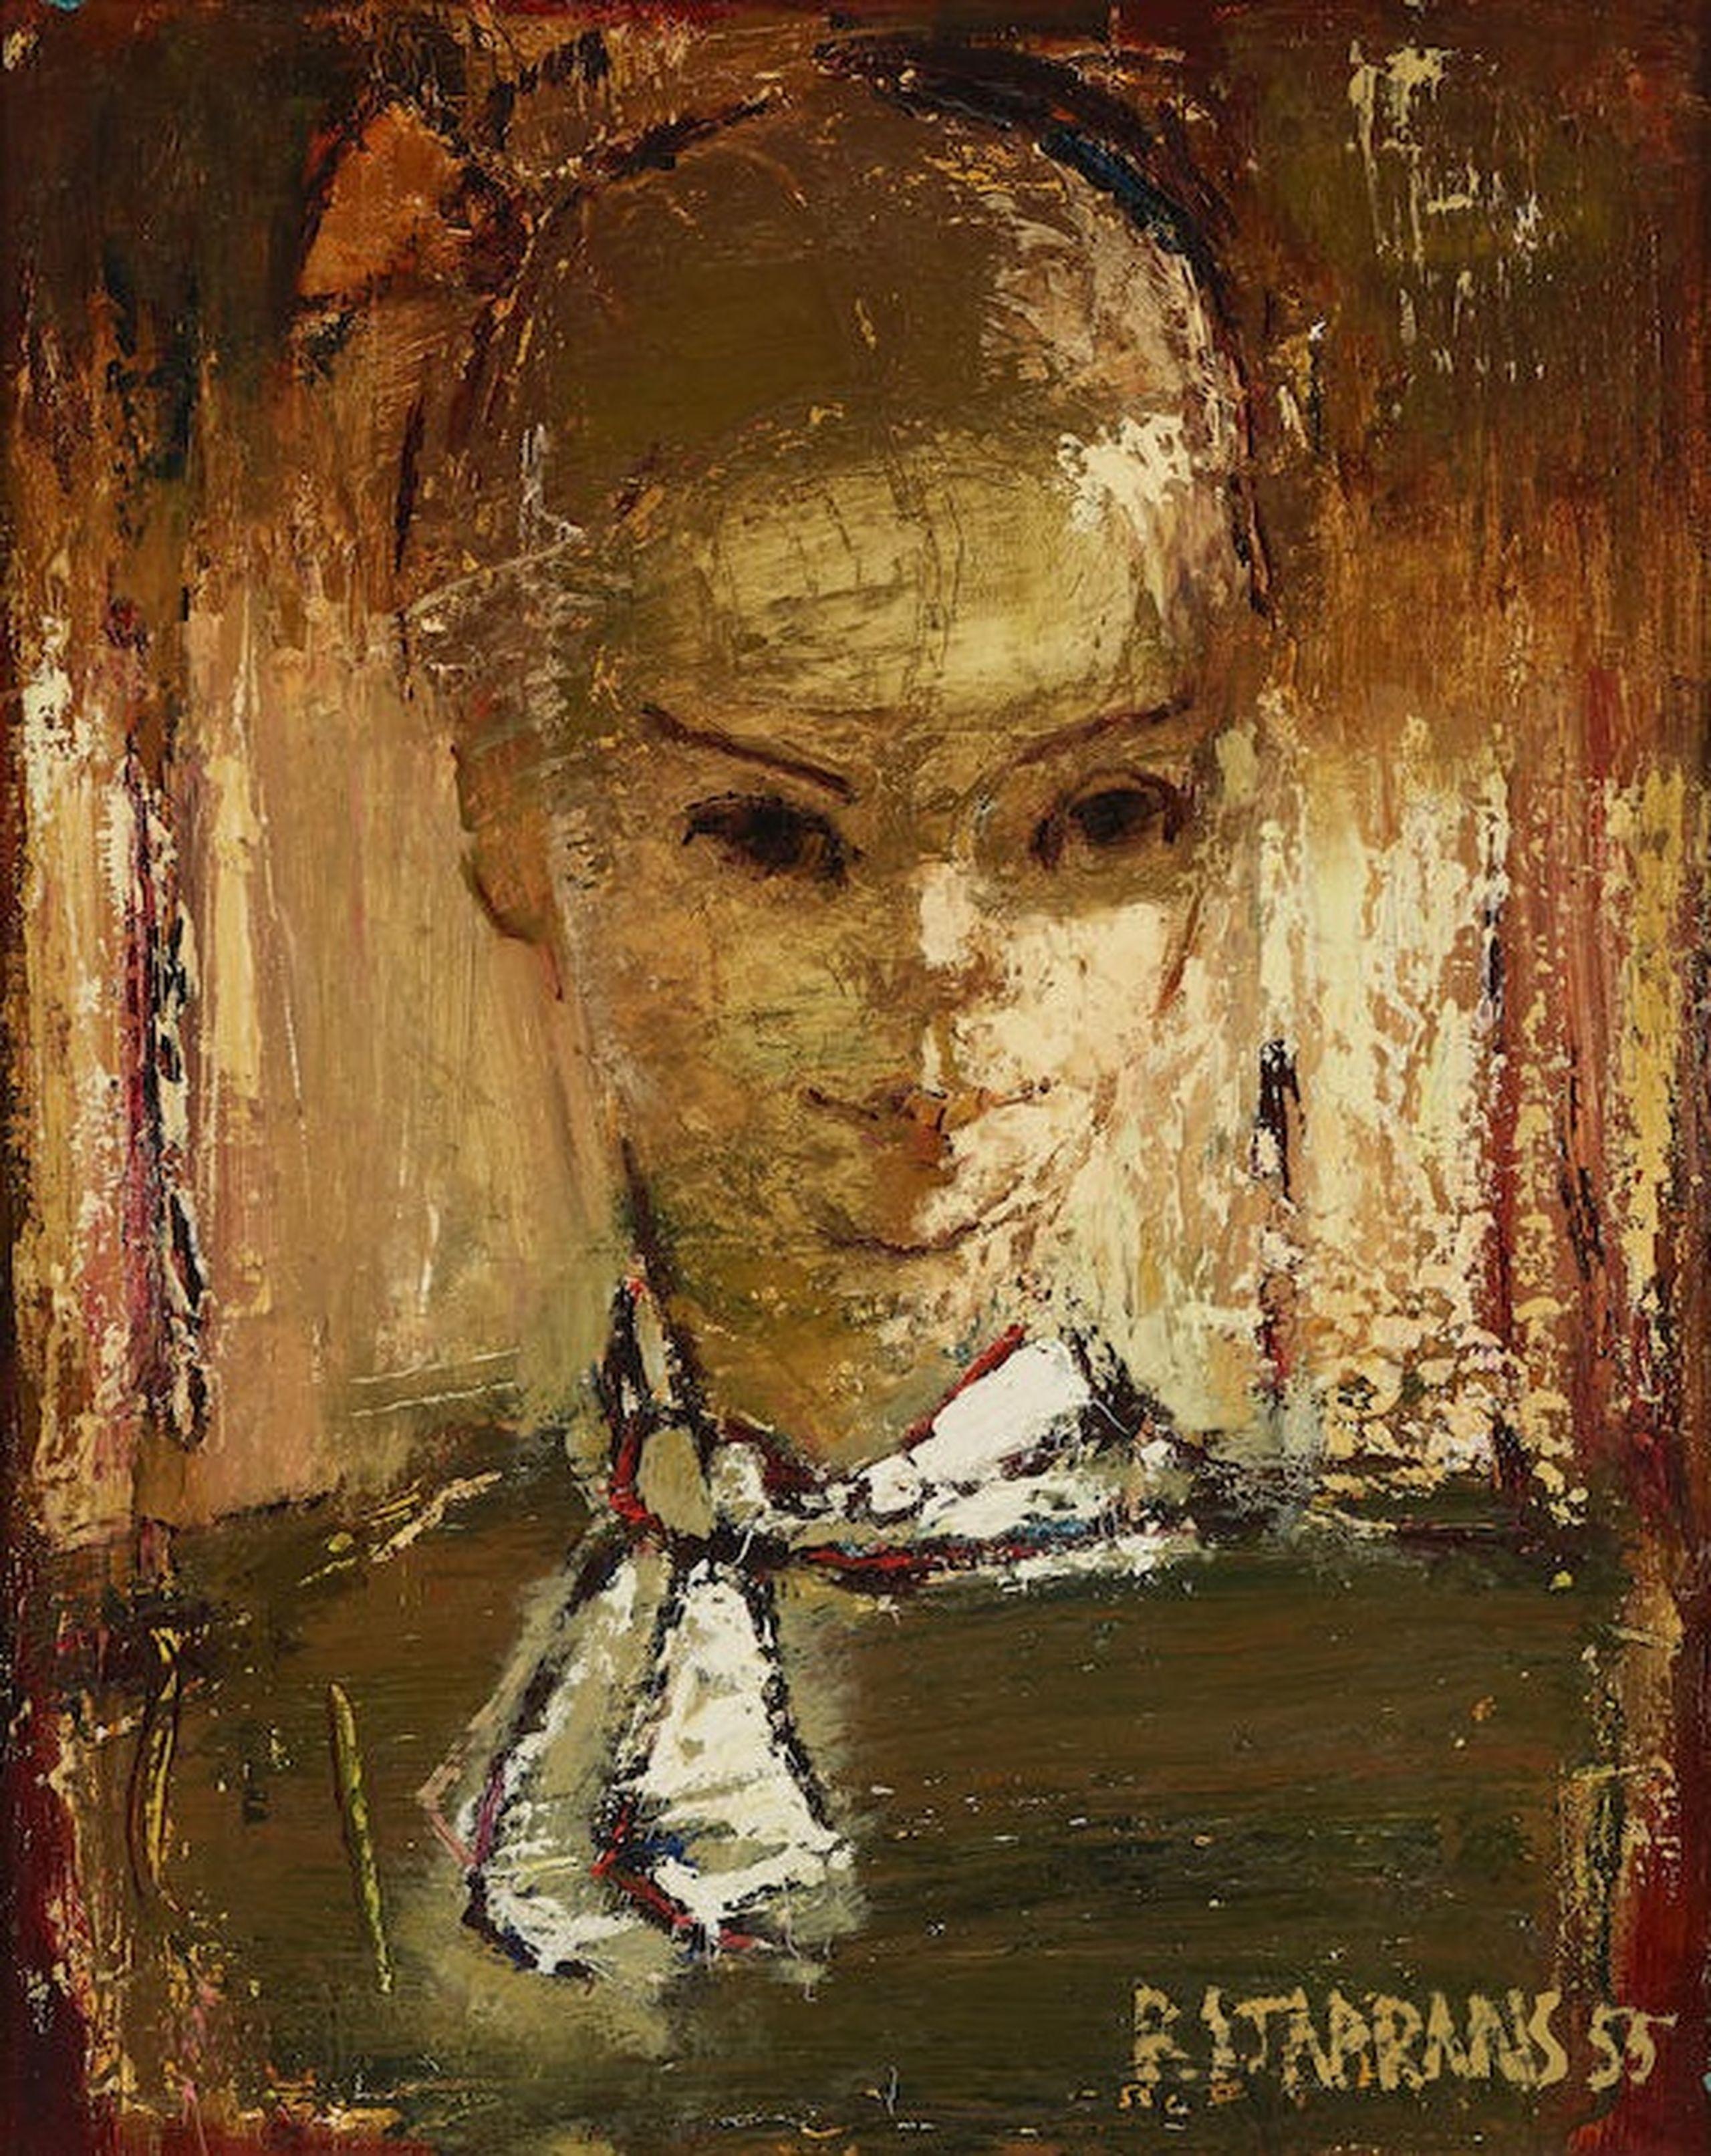 Raimonds Staprаns  Portrait Painting – Frauenporträt. 1955, Öl auf Leinwand, 50.8 x 40.6 cm